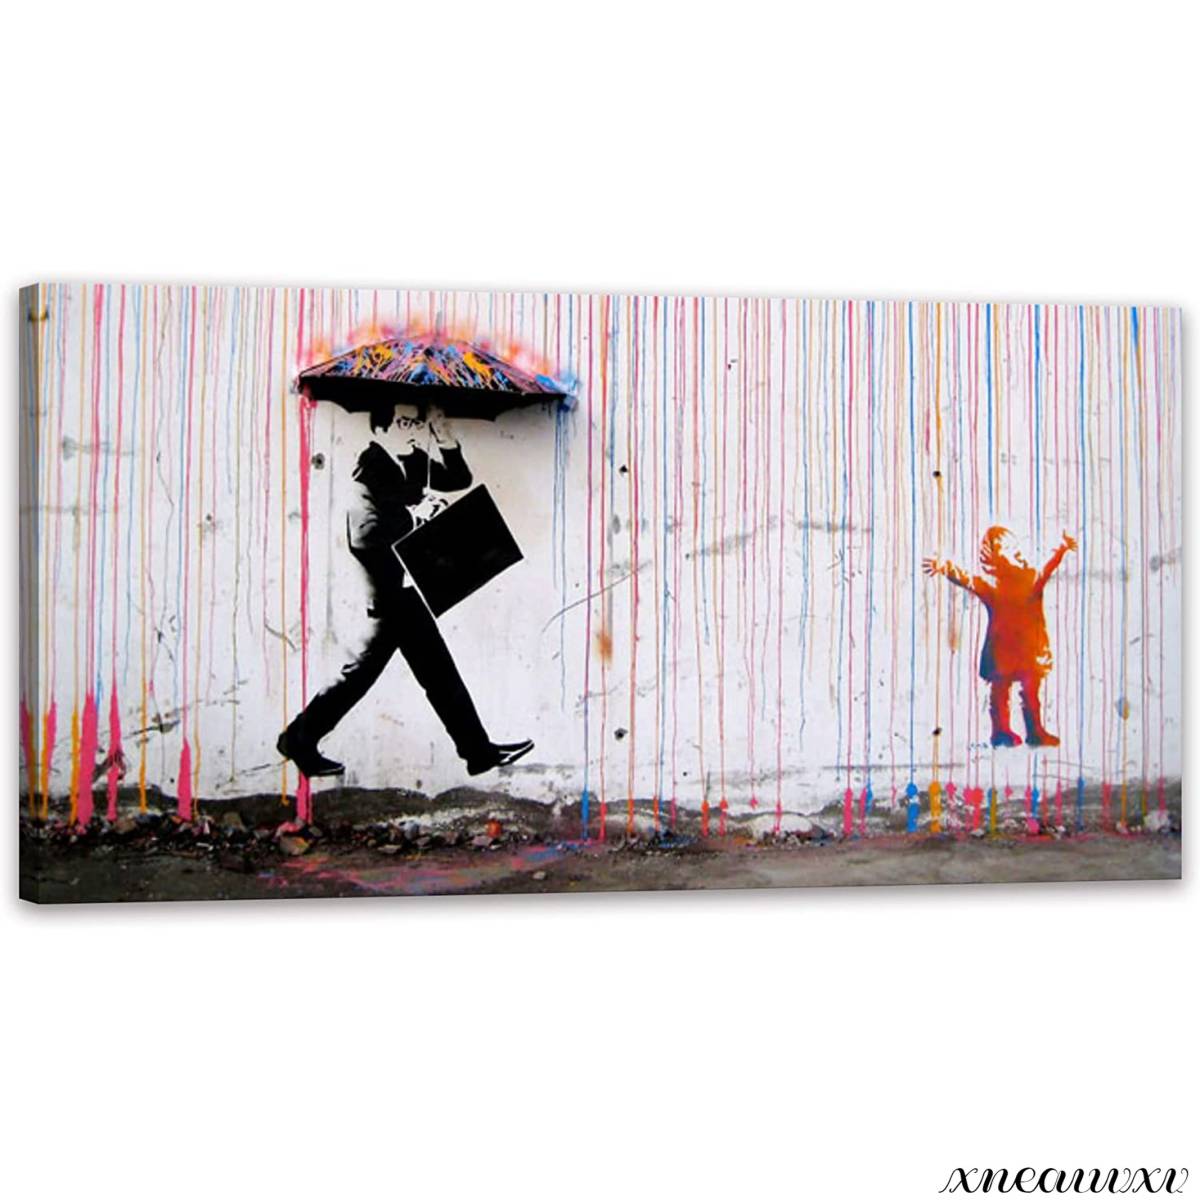 Banksy 대형 아트 패널 비 우산 남자 복제 인테리어 룸 장식 장식 캔버스 회화 벽 교수형 단순 추상 현대 현대, 그림, 오일 페인팅, 자연, 풍경화